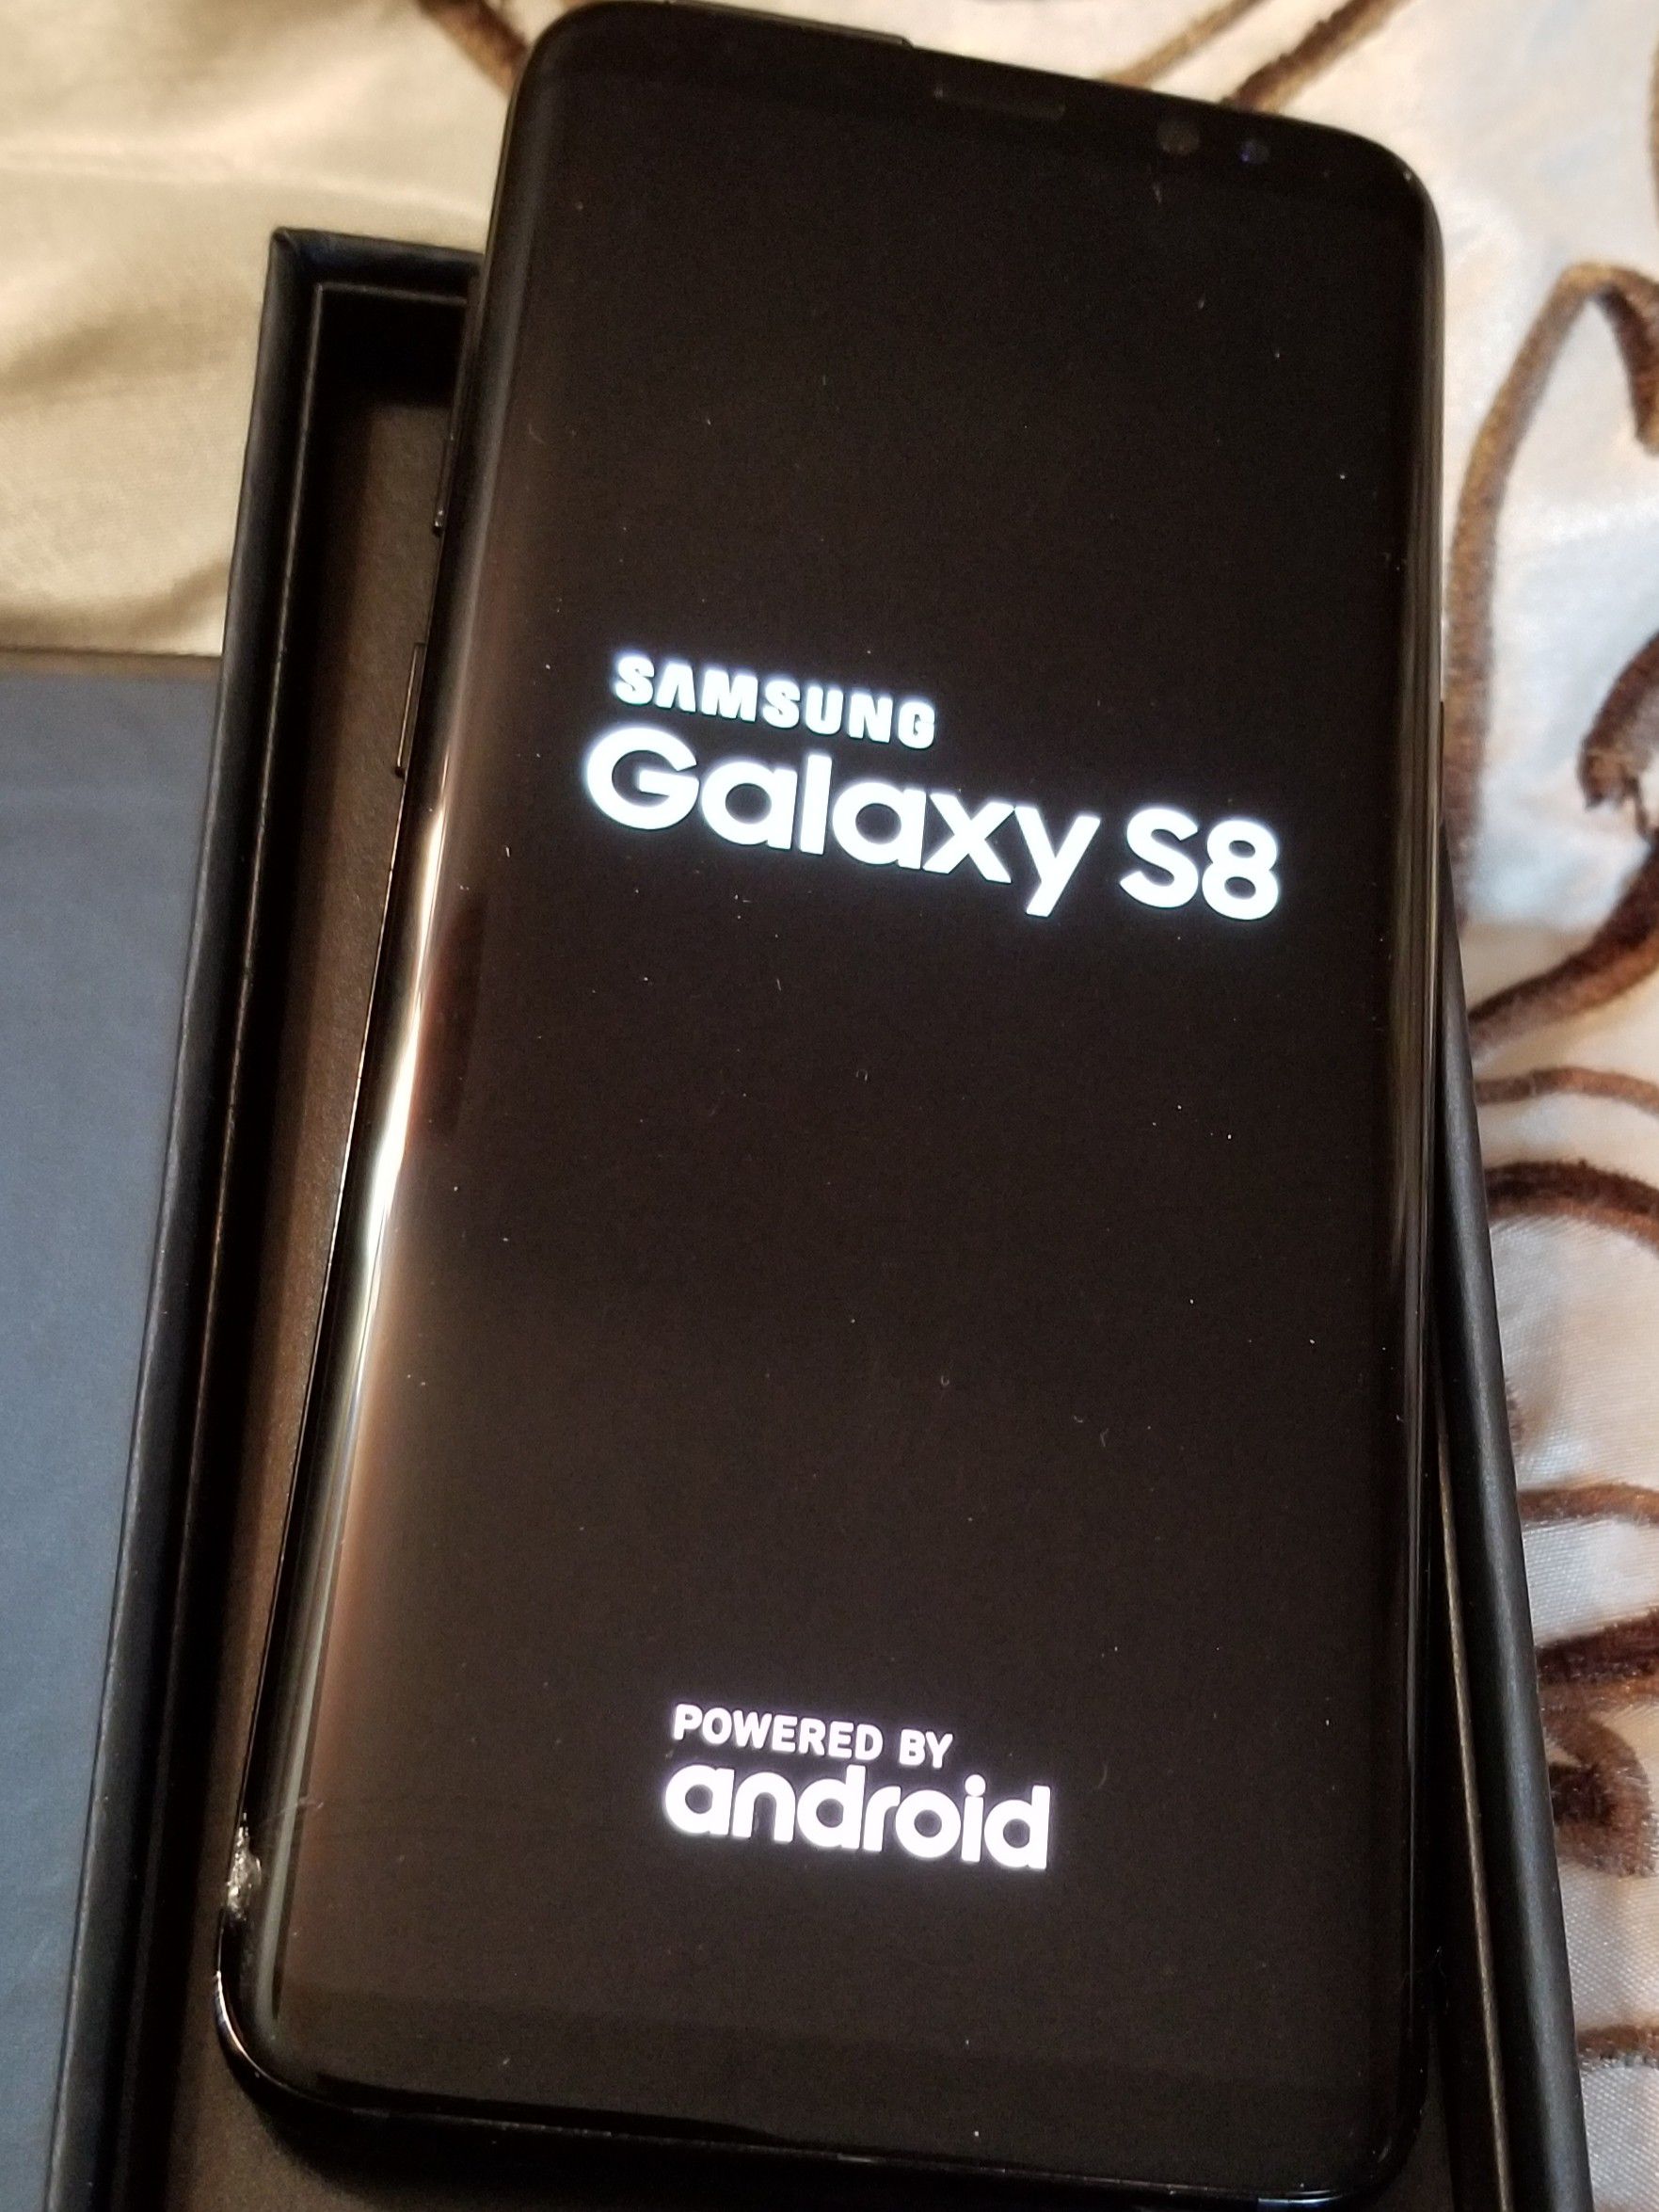 Samsung Galaxy S8 unlocked